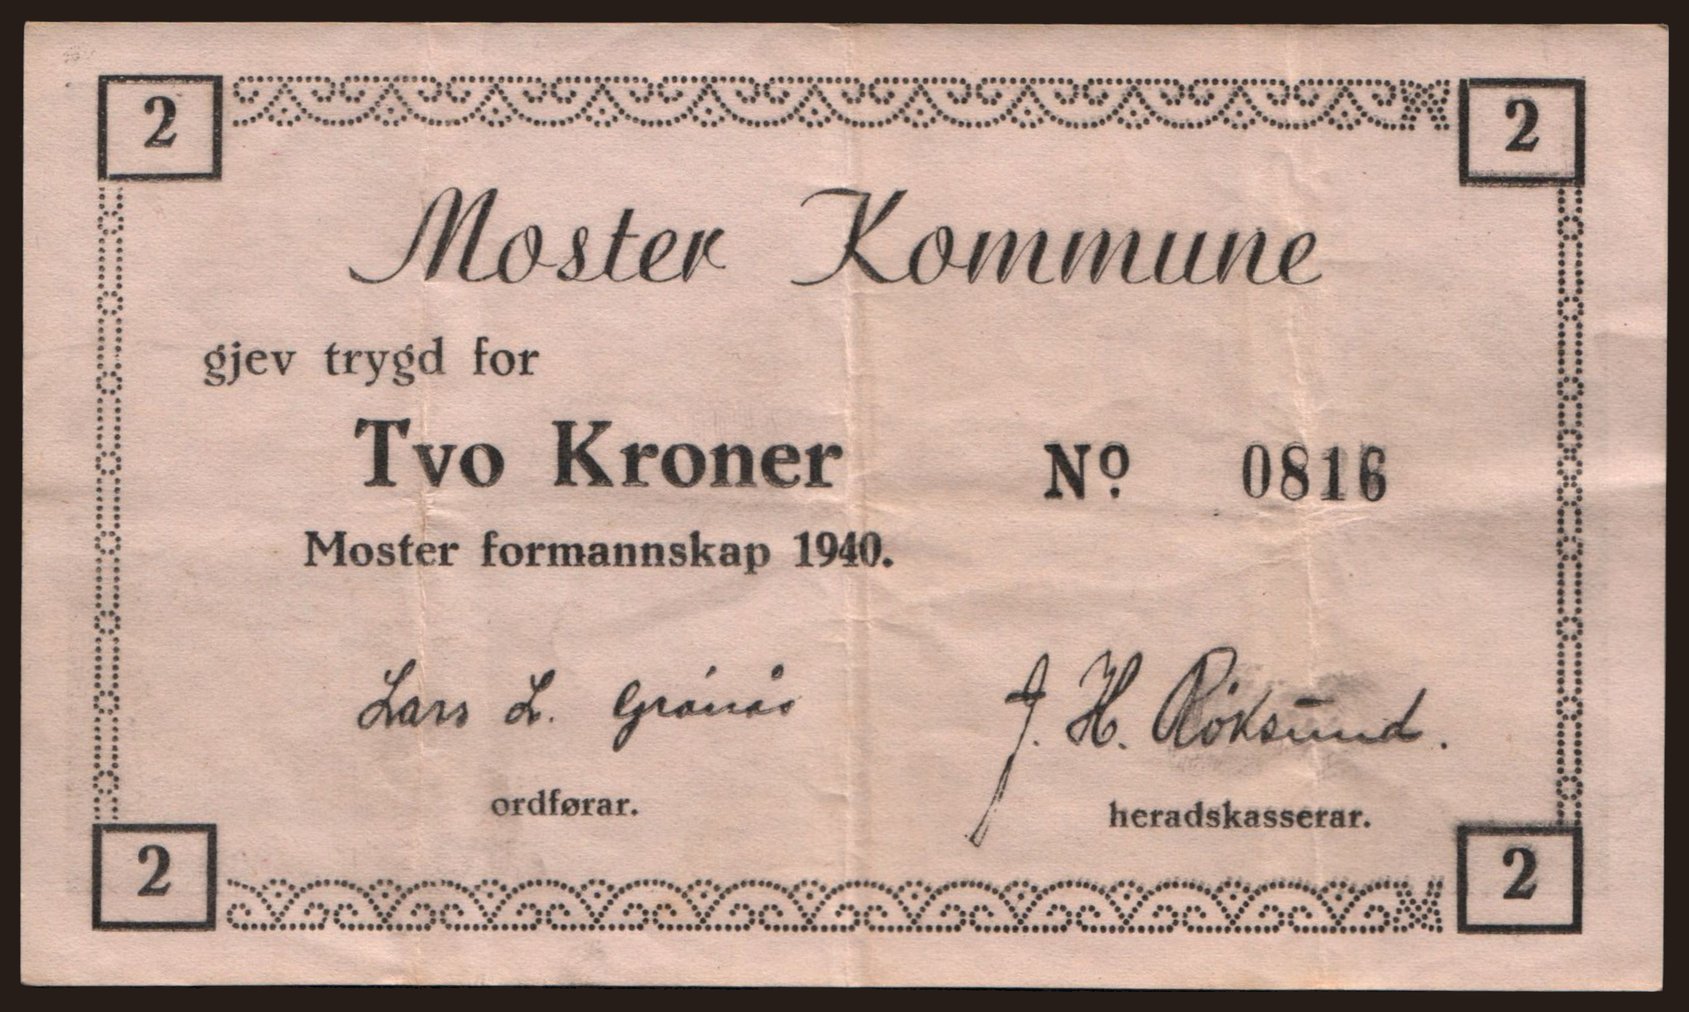 Moster Kommune, 2 kronen, 1940